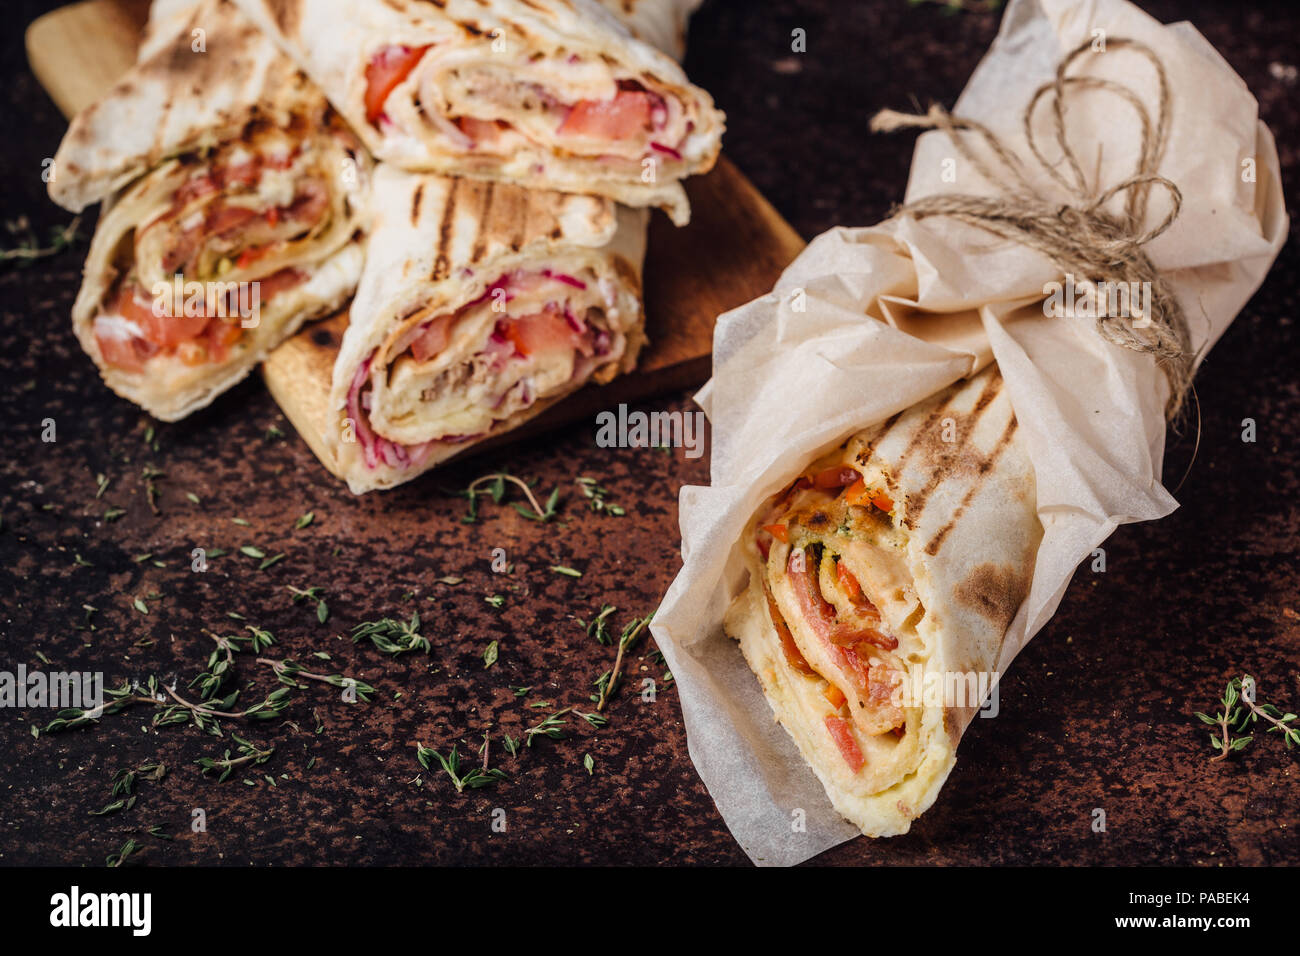 Sandwich Shawarma - un nouveau rouleau de lavash léger, rempli de viande grillée, champignons, fromage et fines herbes. Snack-oriental. Sur un fond de métal. Banque D'Images